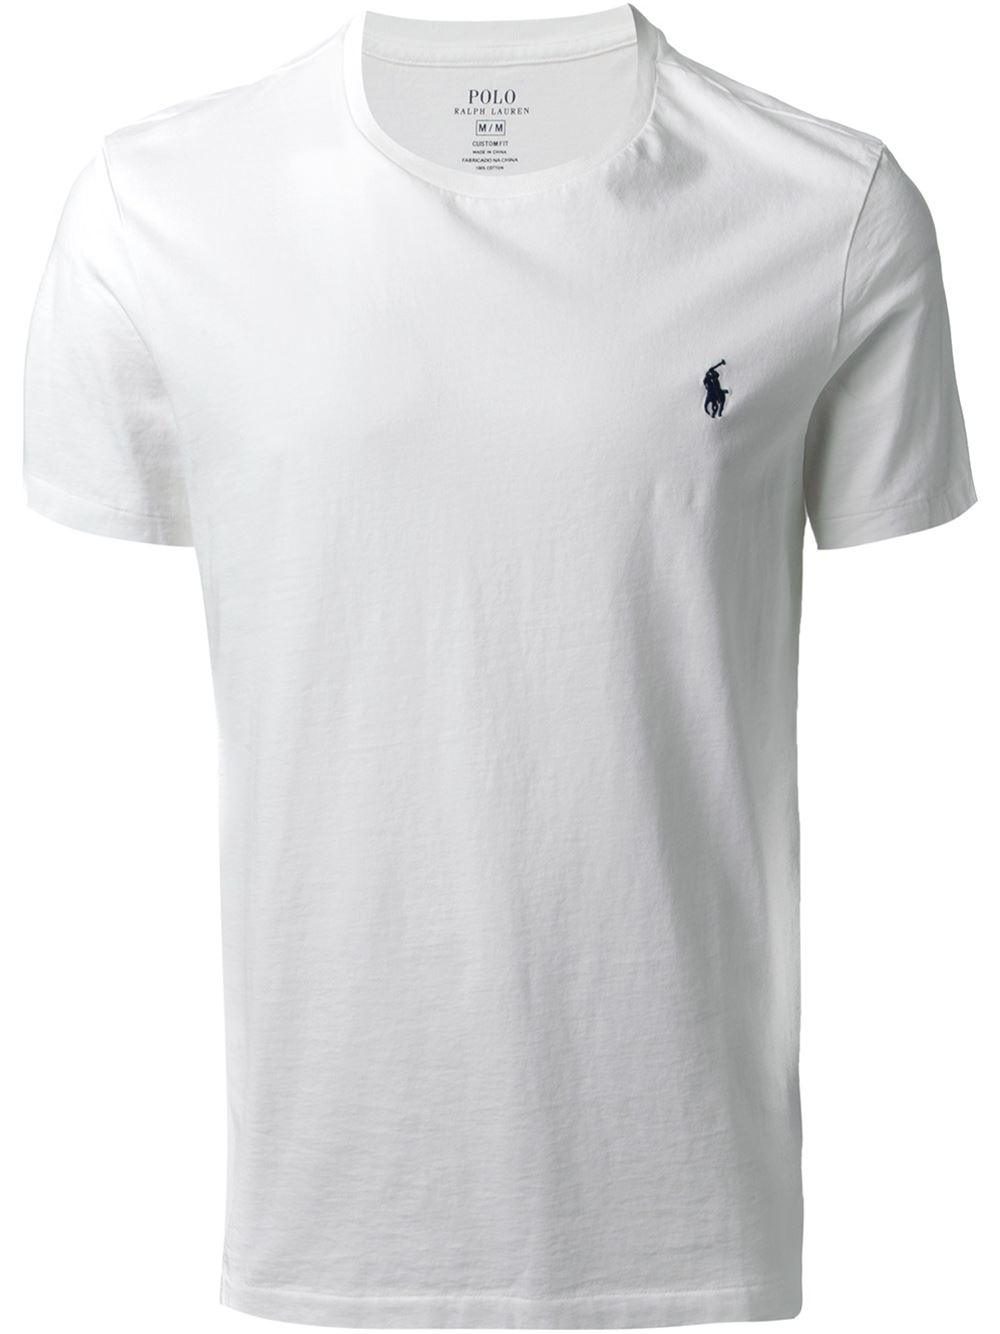 Lyst - Polo Ralph Lauren Crew Neck T-Shirt in White for Men